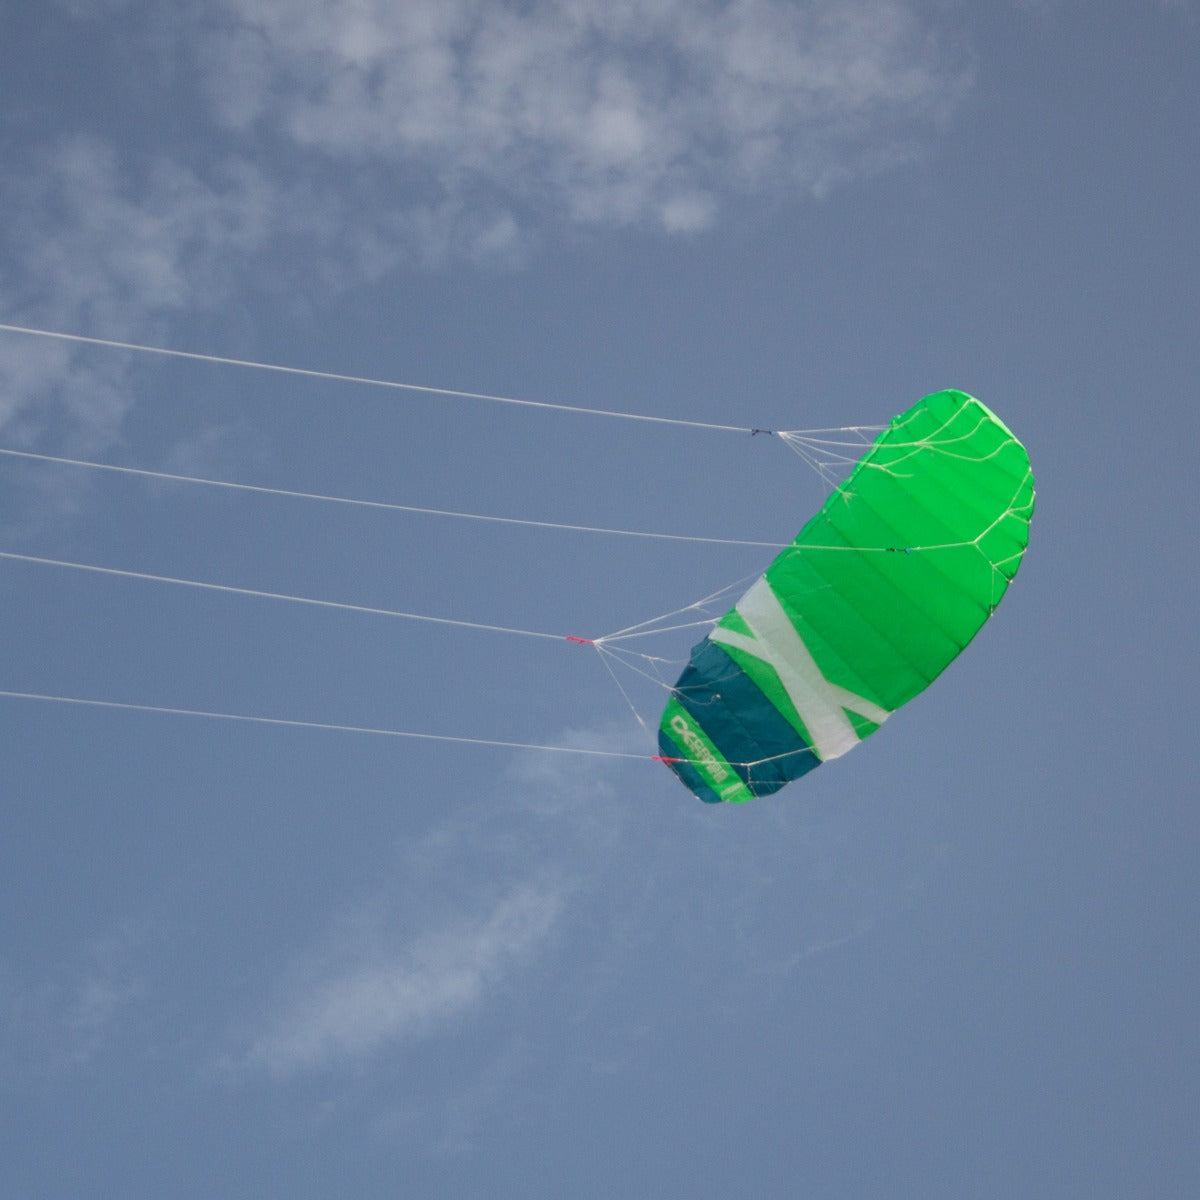 CrossKites Quattro 4.5 Green Vierleiner Lenkmatte Lenkdrachen mit Handles R2F Kite